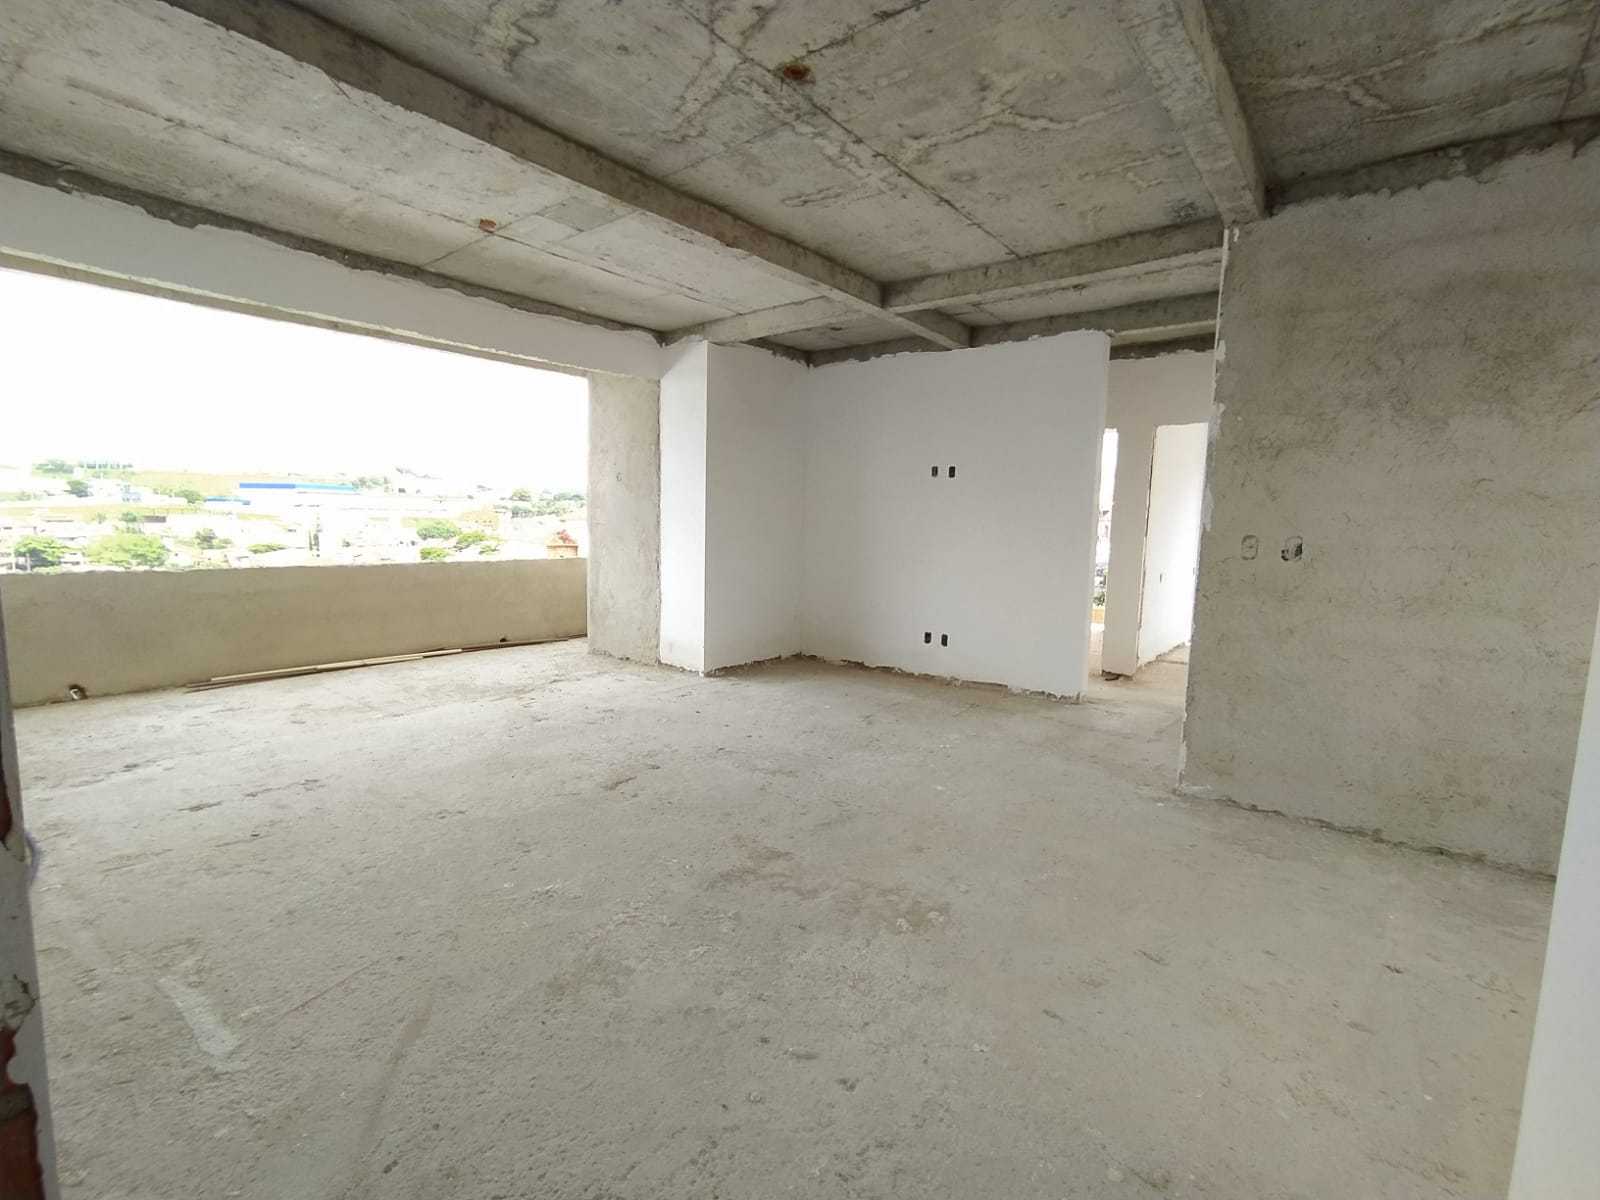 Apartamento, 3 quartos, 160 m² - Foto 1